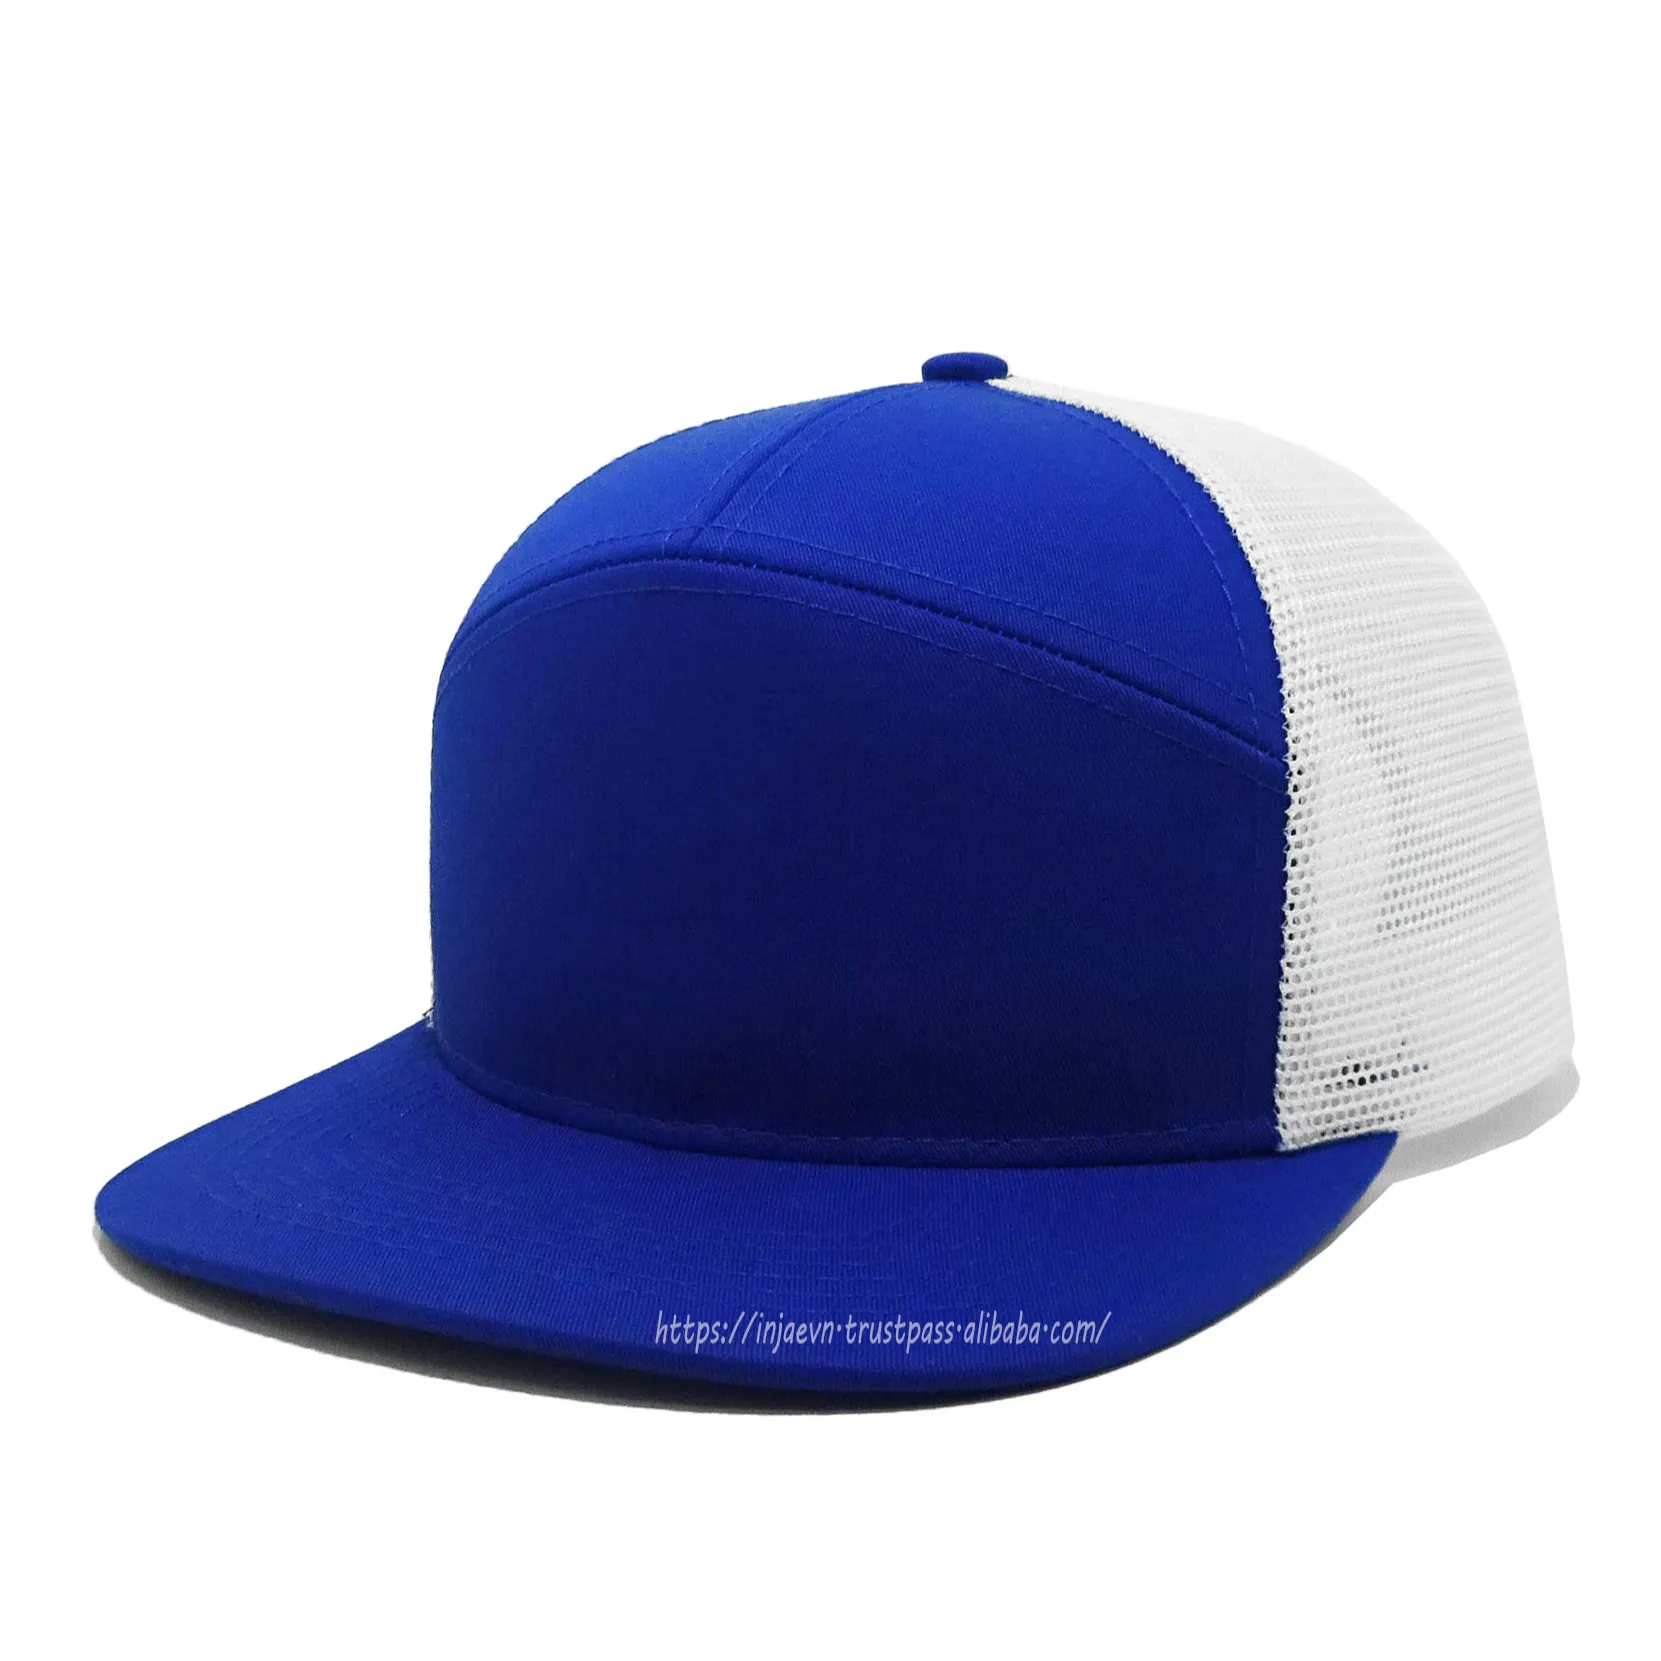 Высококлассная шляпа с 7-панельной синей/белой Сетчатой застежкой, спортивный стиль, вьетнамский головной убор с регулируемым закрытием, рекламная реклама